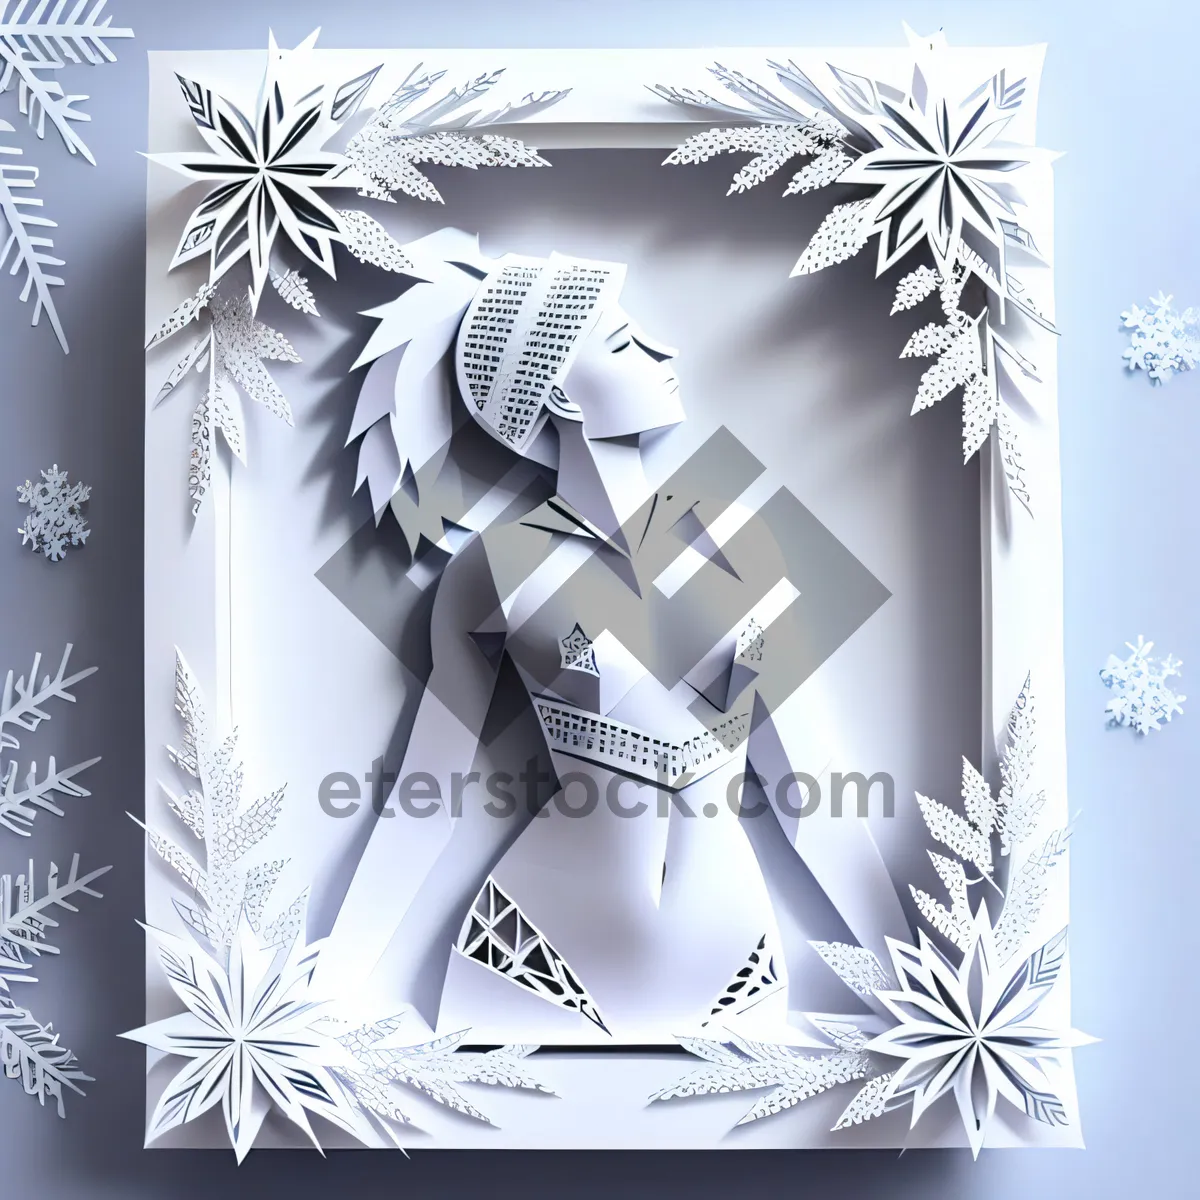 Picture of Winter Swimmer: Festive Snowflake Decor